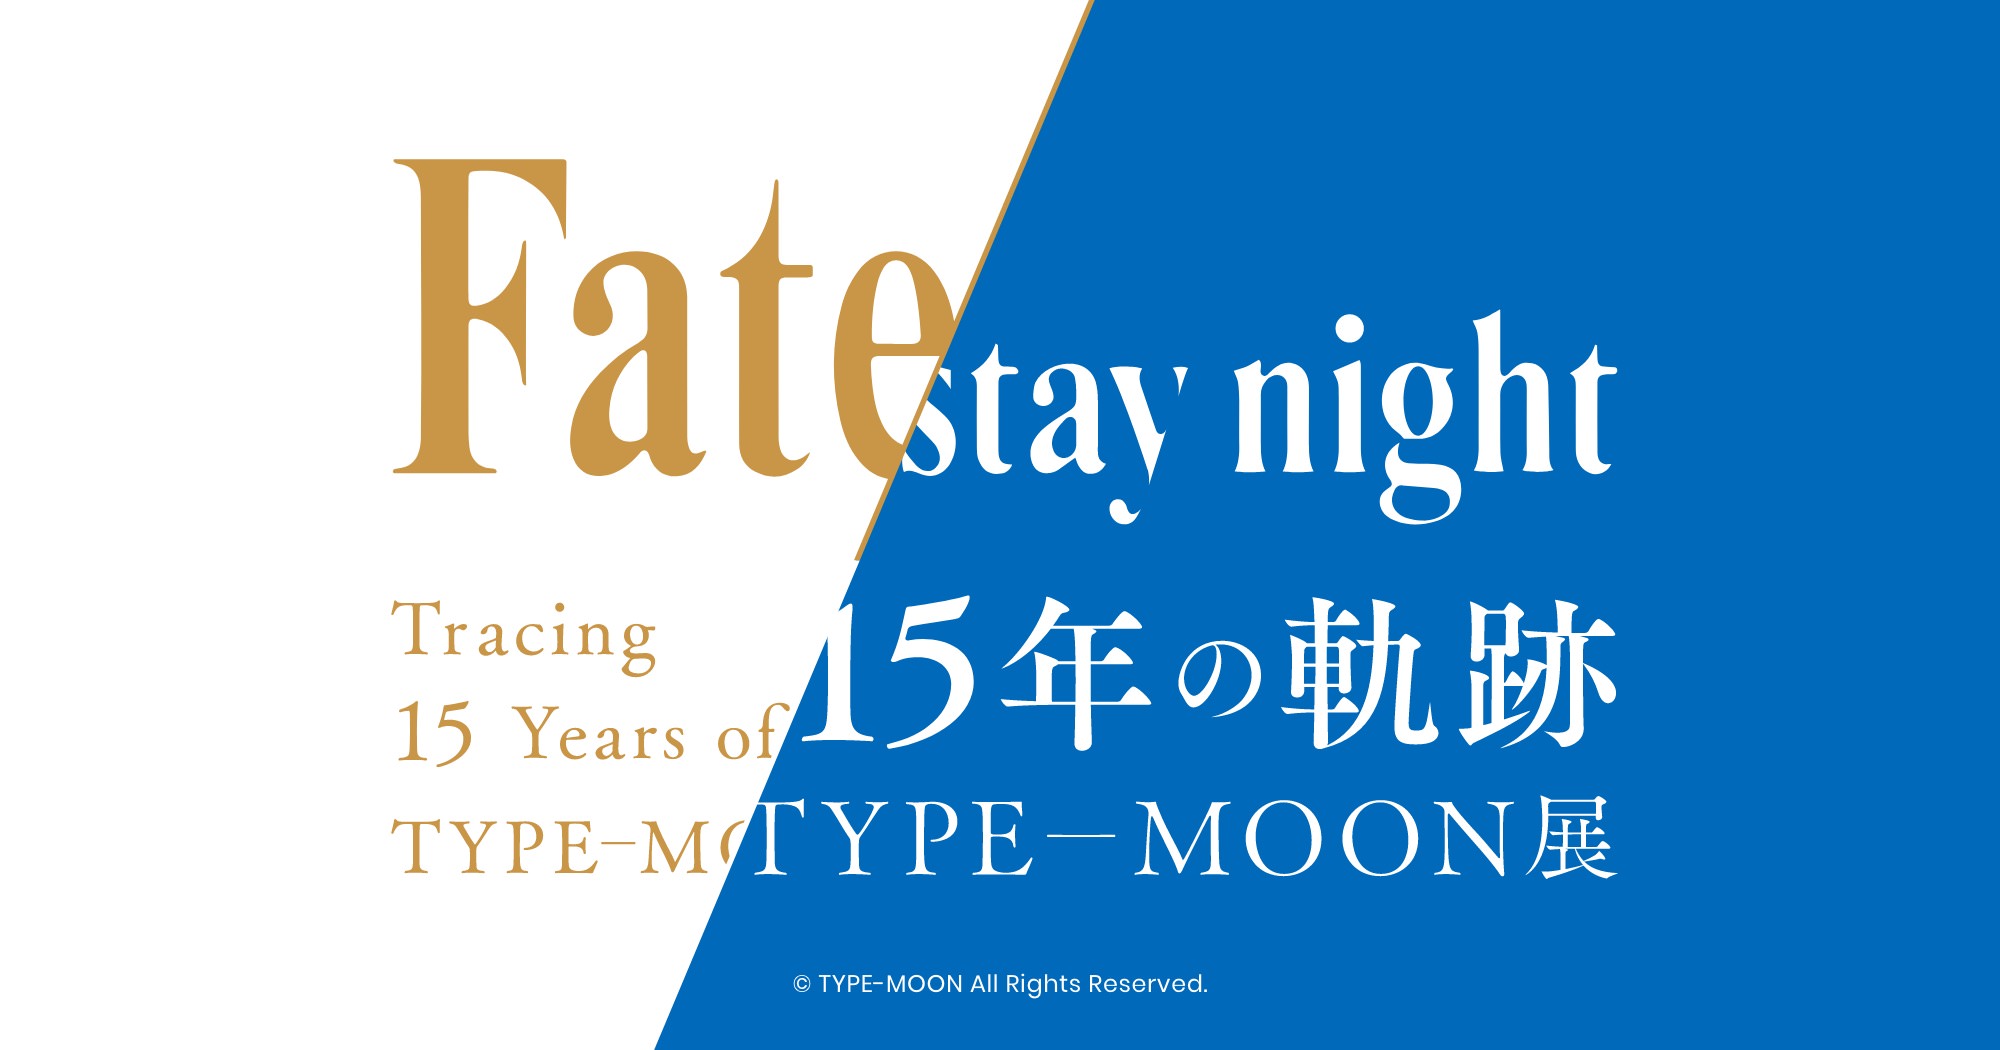 Fate/stay night TYPE-MOON展 4.25までCopenhagenコラボカフェ開催!!